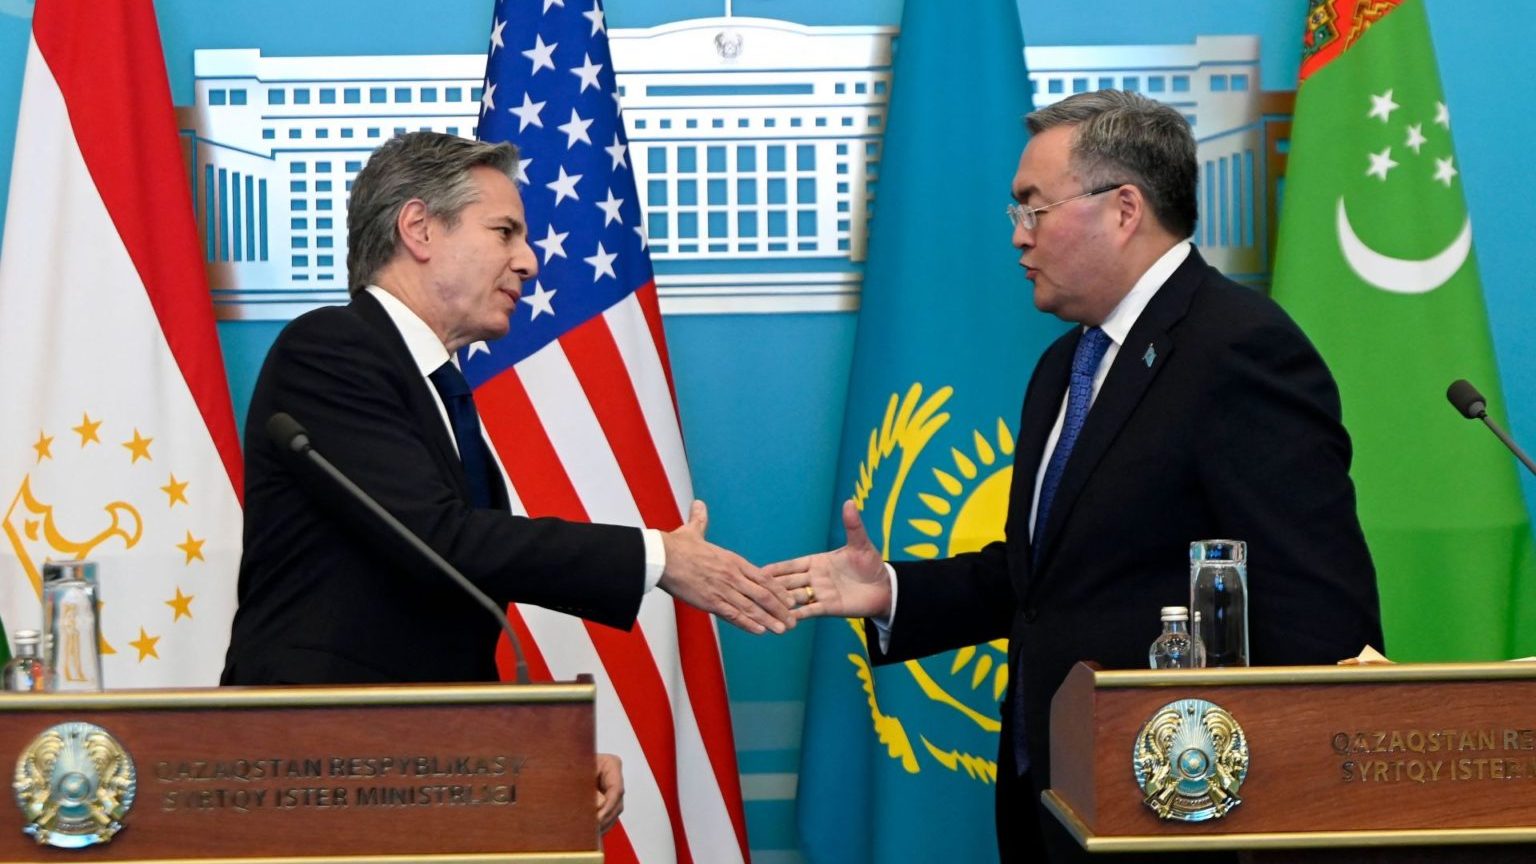 Ngoại trưởng Antony Blinken (trái) của Mỹ bắt tay Ngoại trưởng Mukhtar Tleuberdi của Kazakhstan tại cuộc họp báo ở Astana, Kazakhstan, hôm 28/2/2023. Ảnh: Olivier Douliery/ Pool/ AFP via Getty Images